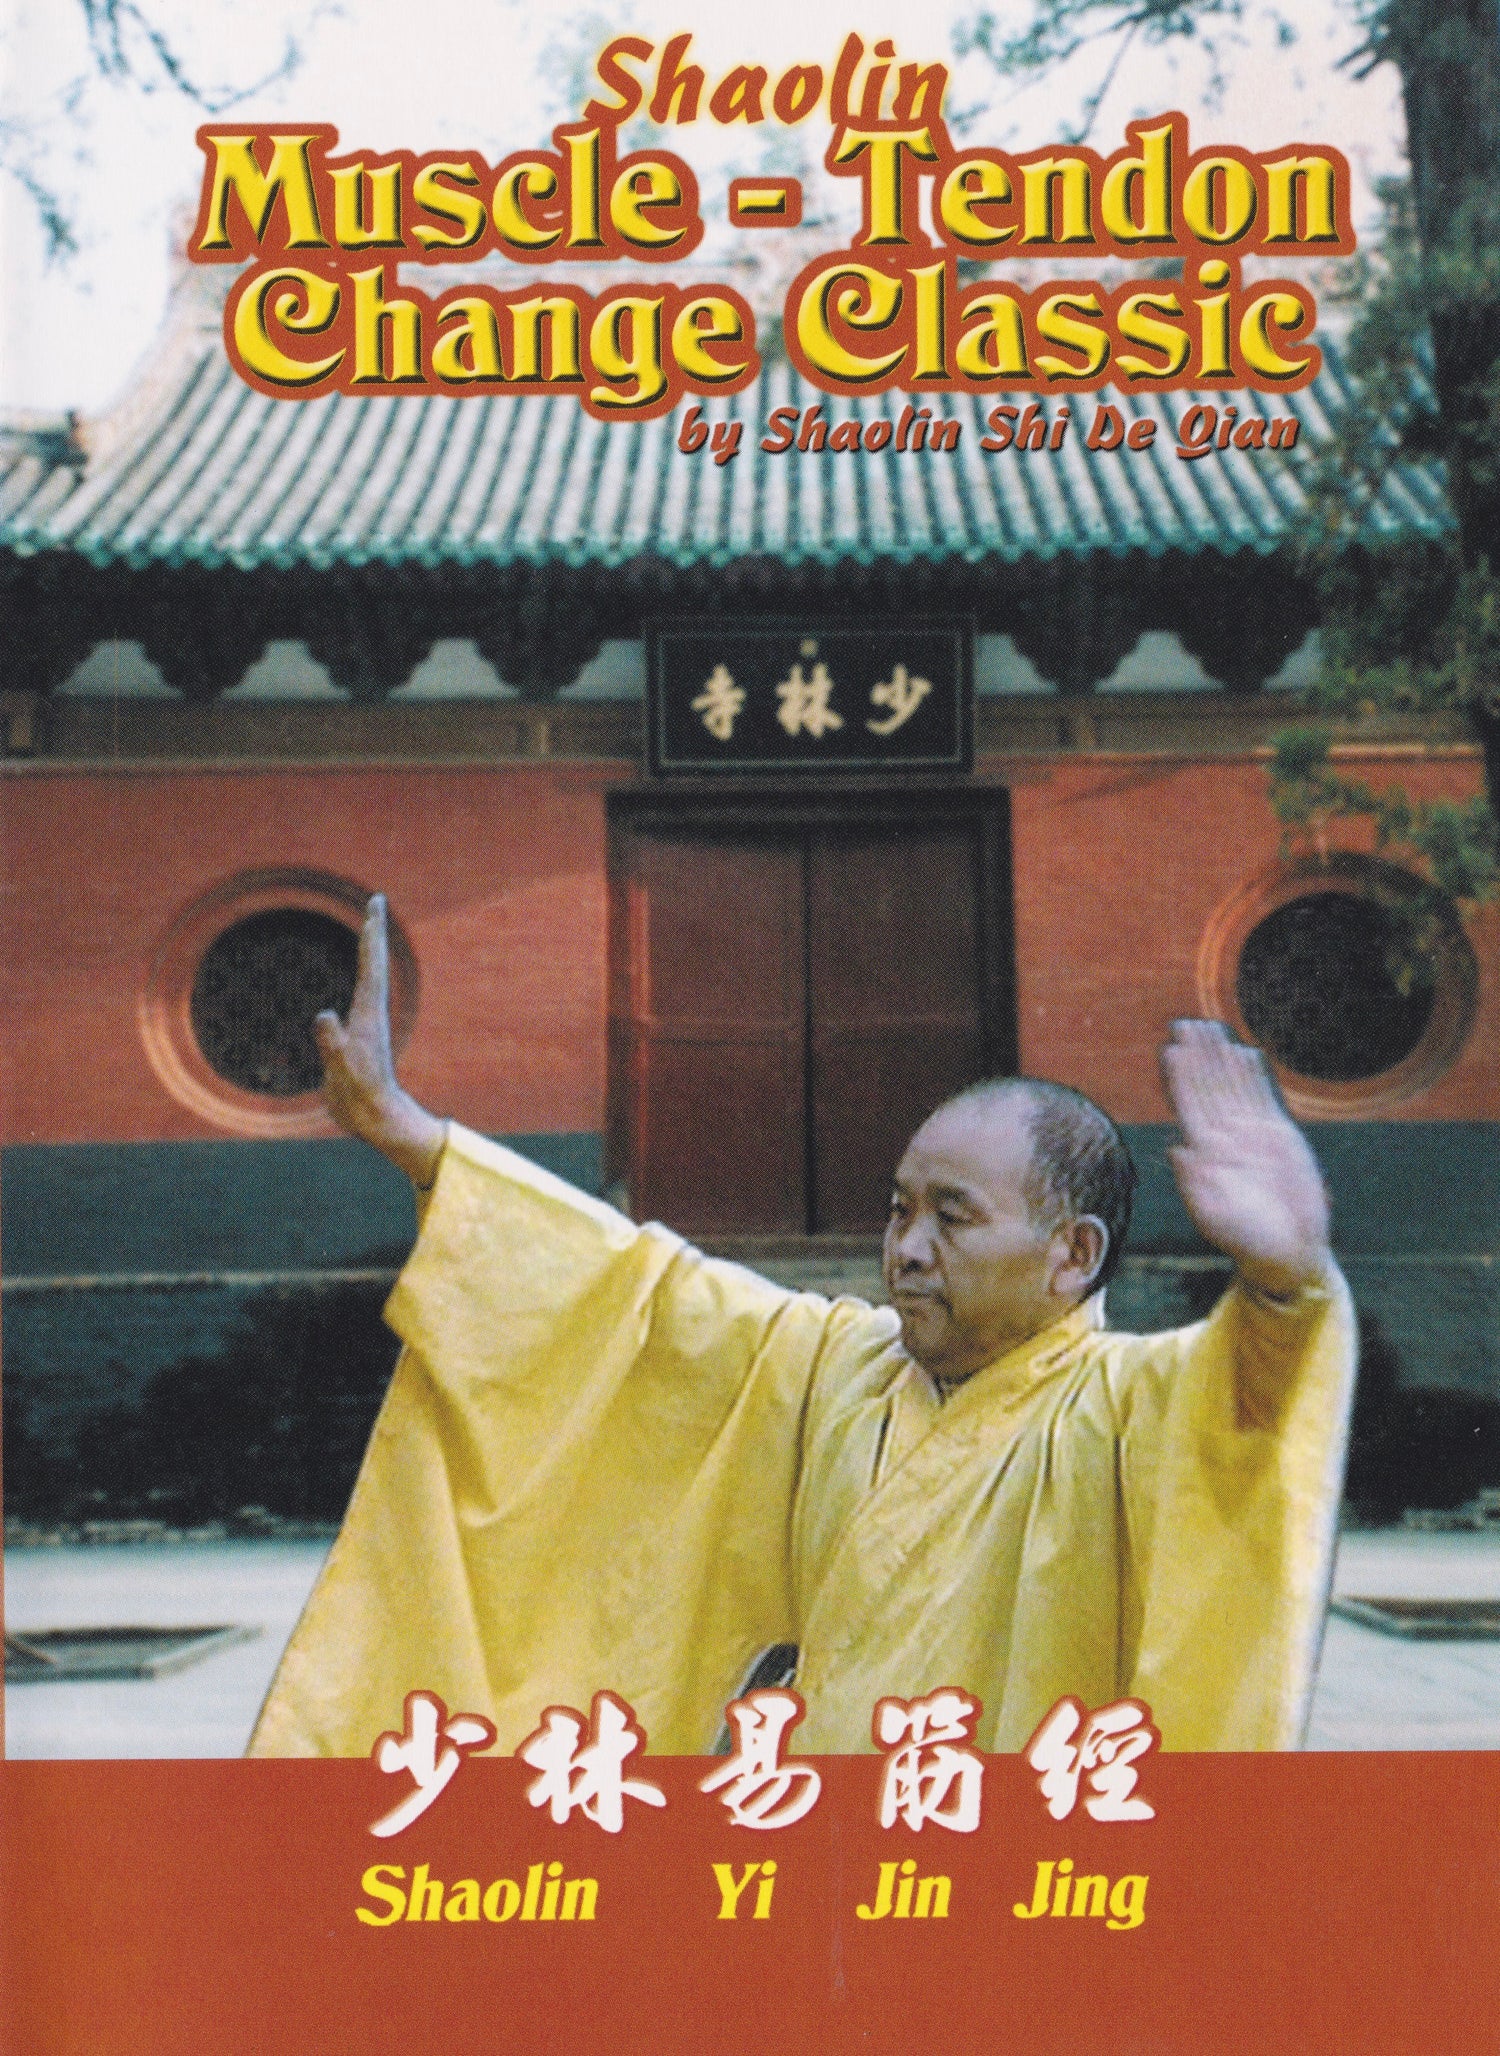 DVD clásico de cambio de tendón muscular Shaolin de Shi De Qian